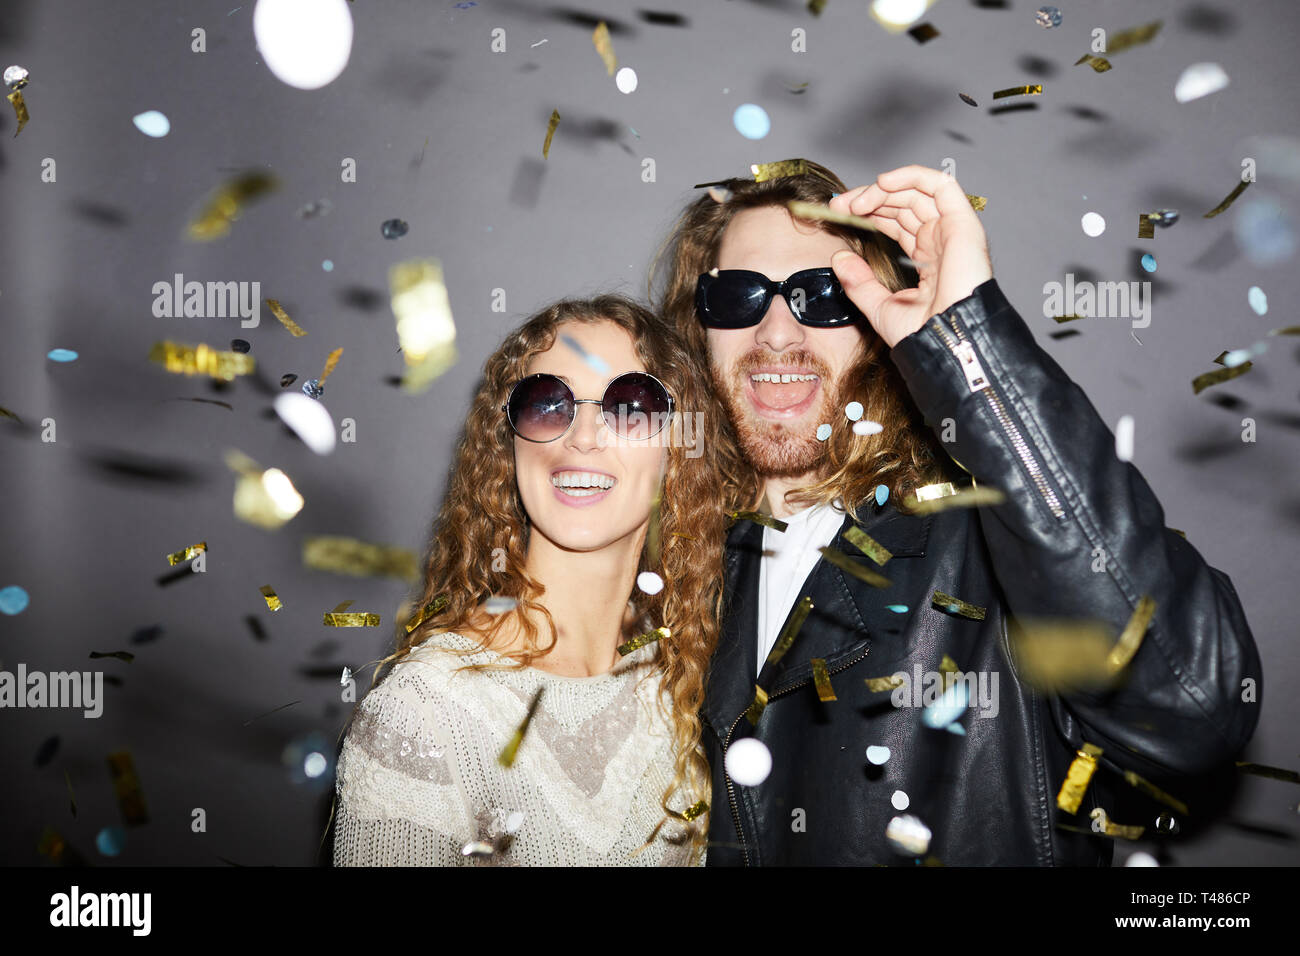 Jeune couple d'hipster joyeux et excité avec des cheveux bouclés portant des lunettes de soleil se tenant sous des confettis dorés et s'amuser à la fête Banque D'Images